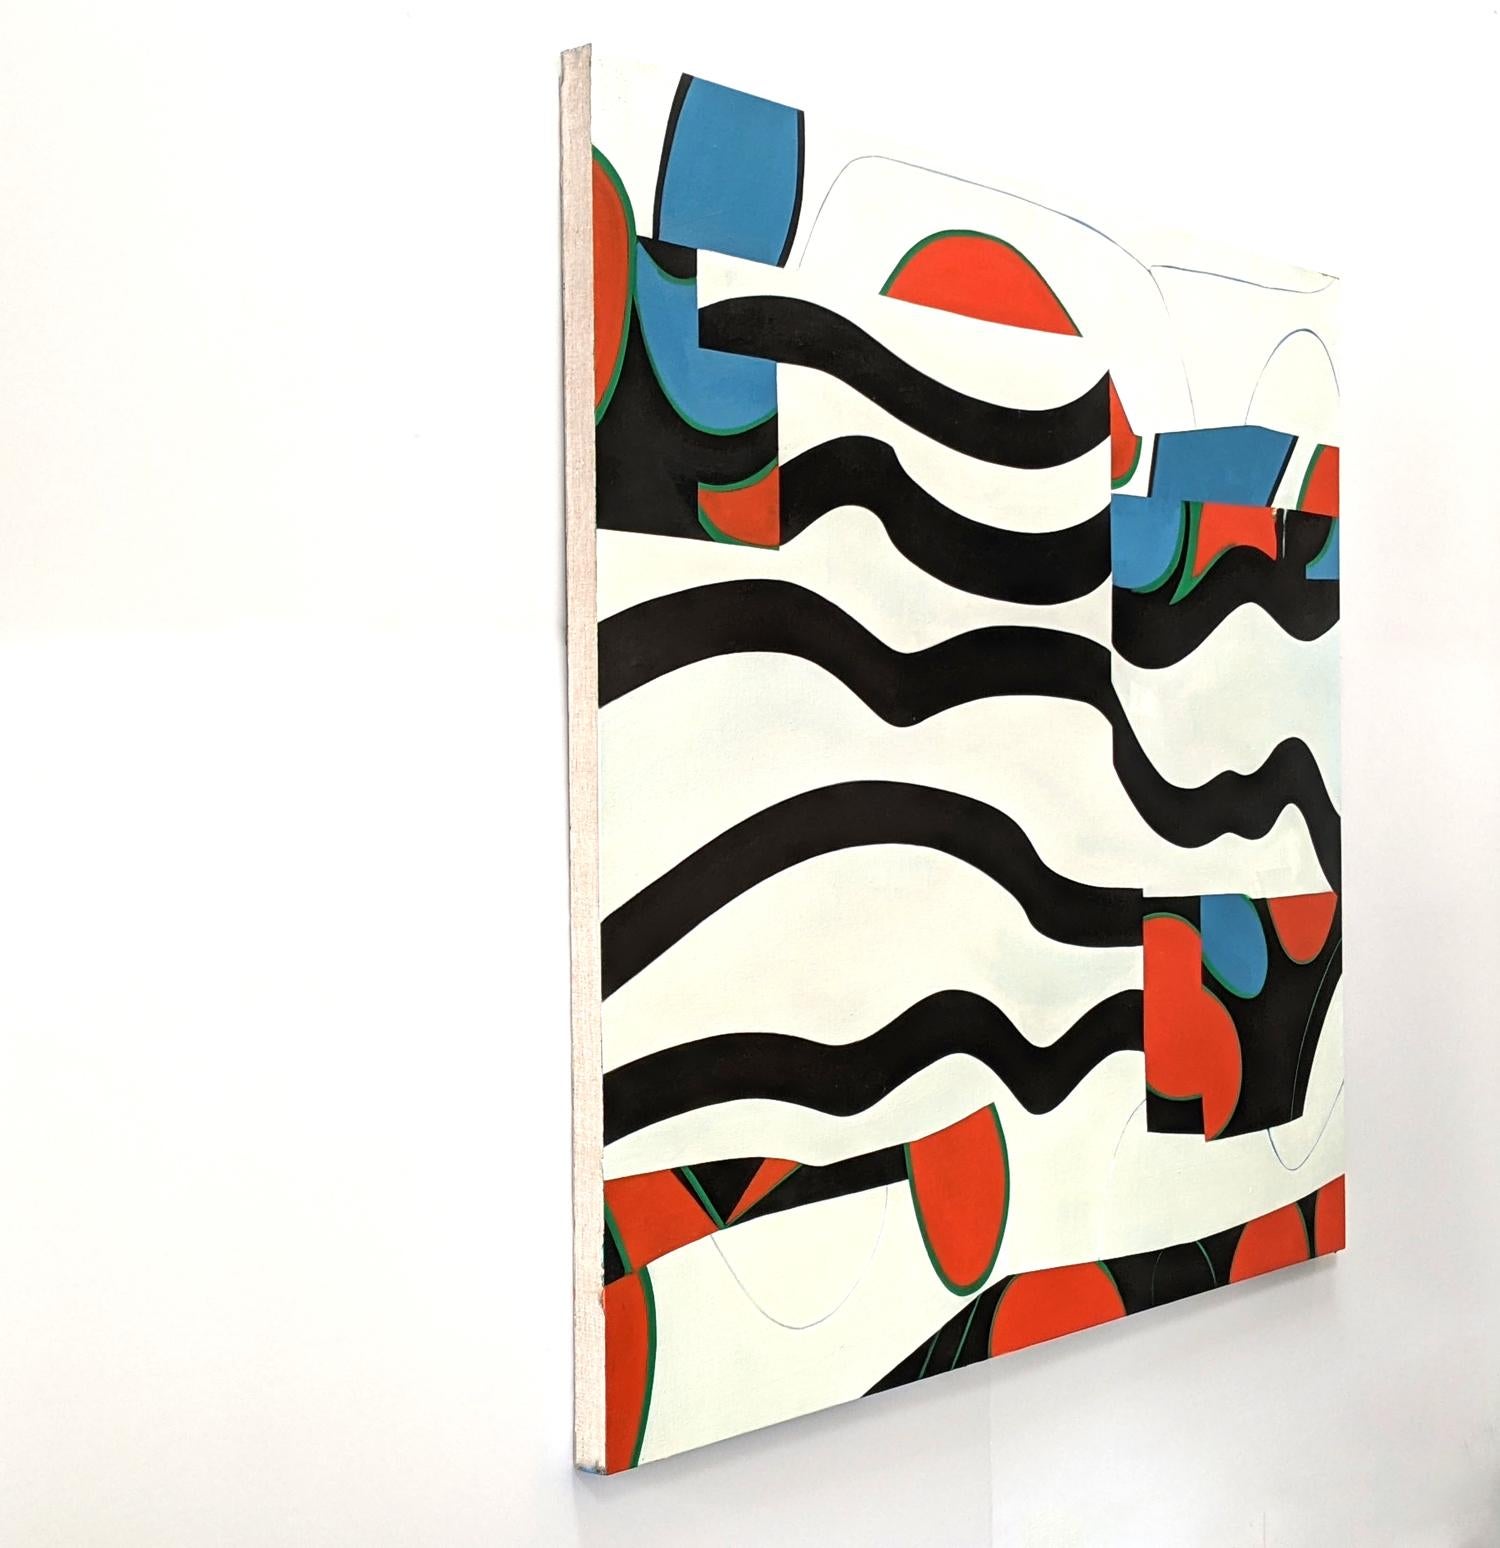 Dans cette œuvre abstraite lyrique de Mel Davis, des formes organiques et des lignes fluides se croisent dans une composition horizontale ludique. Whiting : utilisation de la forme et de la couleur - le bleu vif, le rouge et le noir contrastent avec